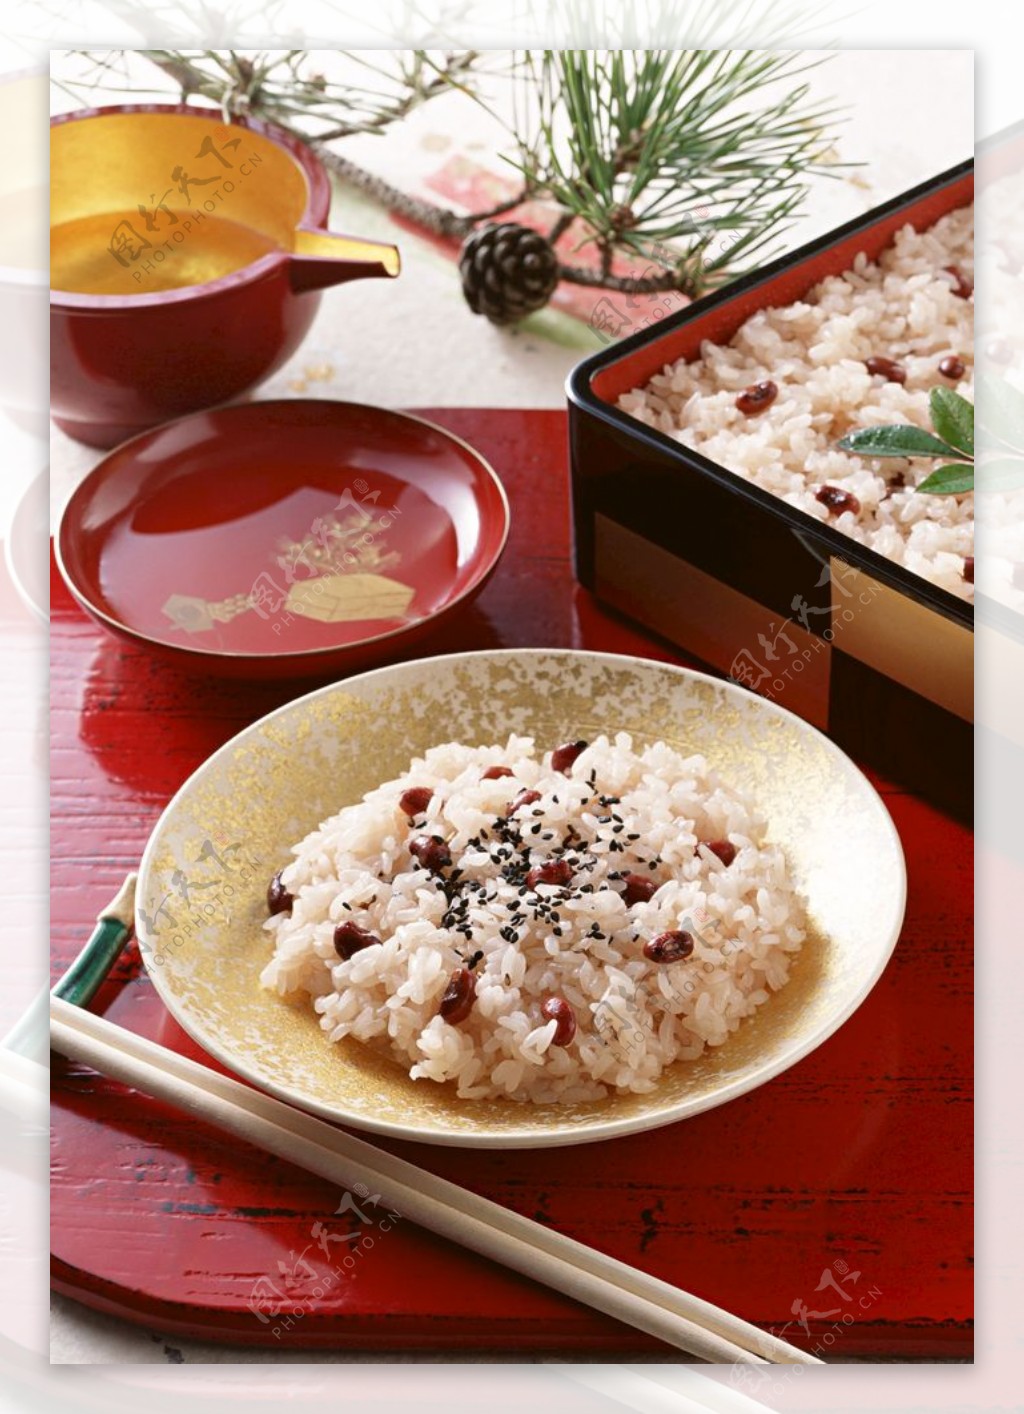 日本红豆饭怎么做_日本红豆饭的做法_只爱飞飞自己_豆果美食